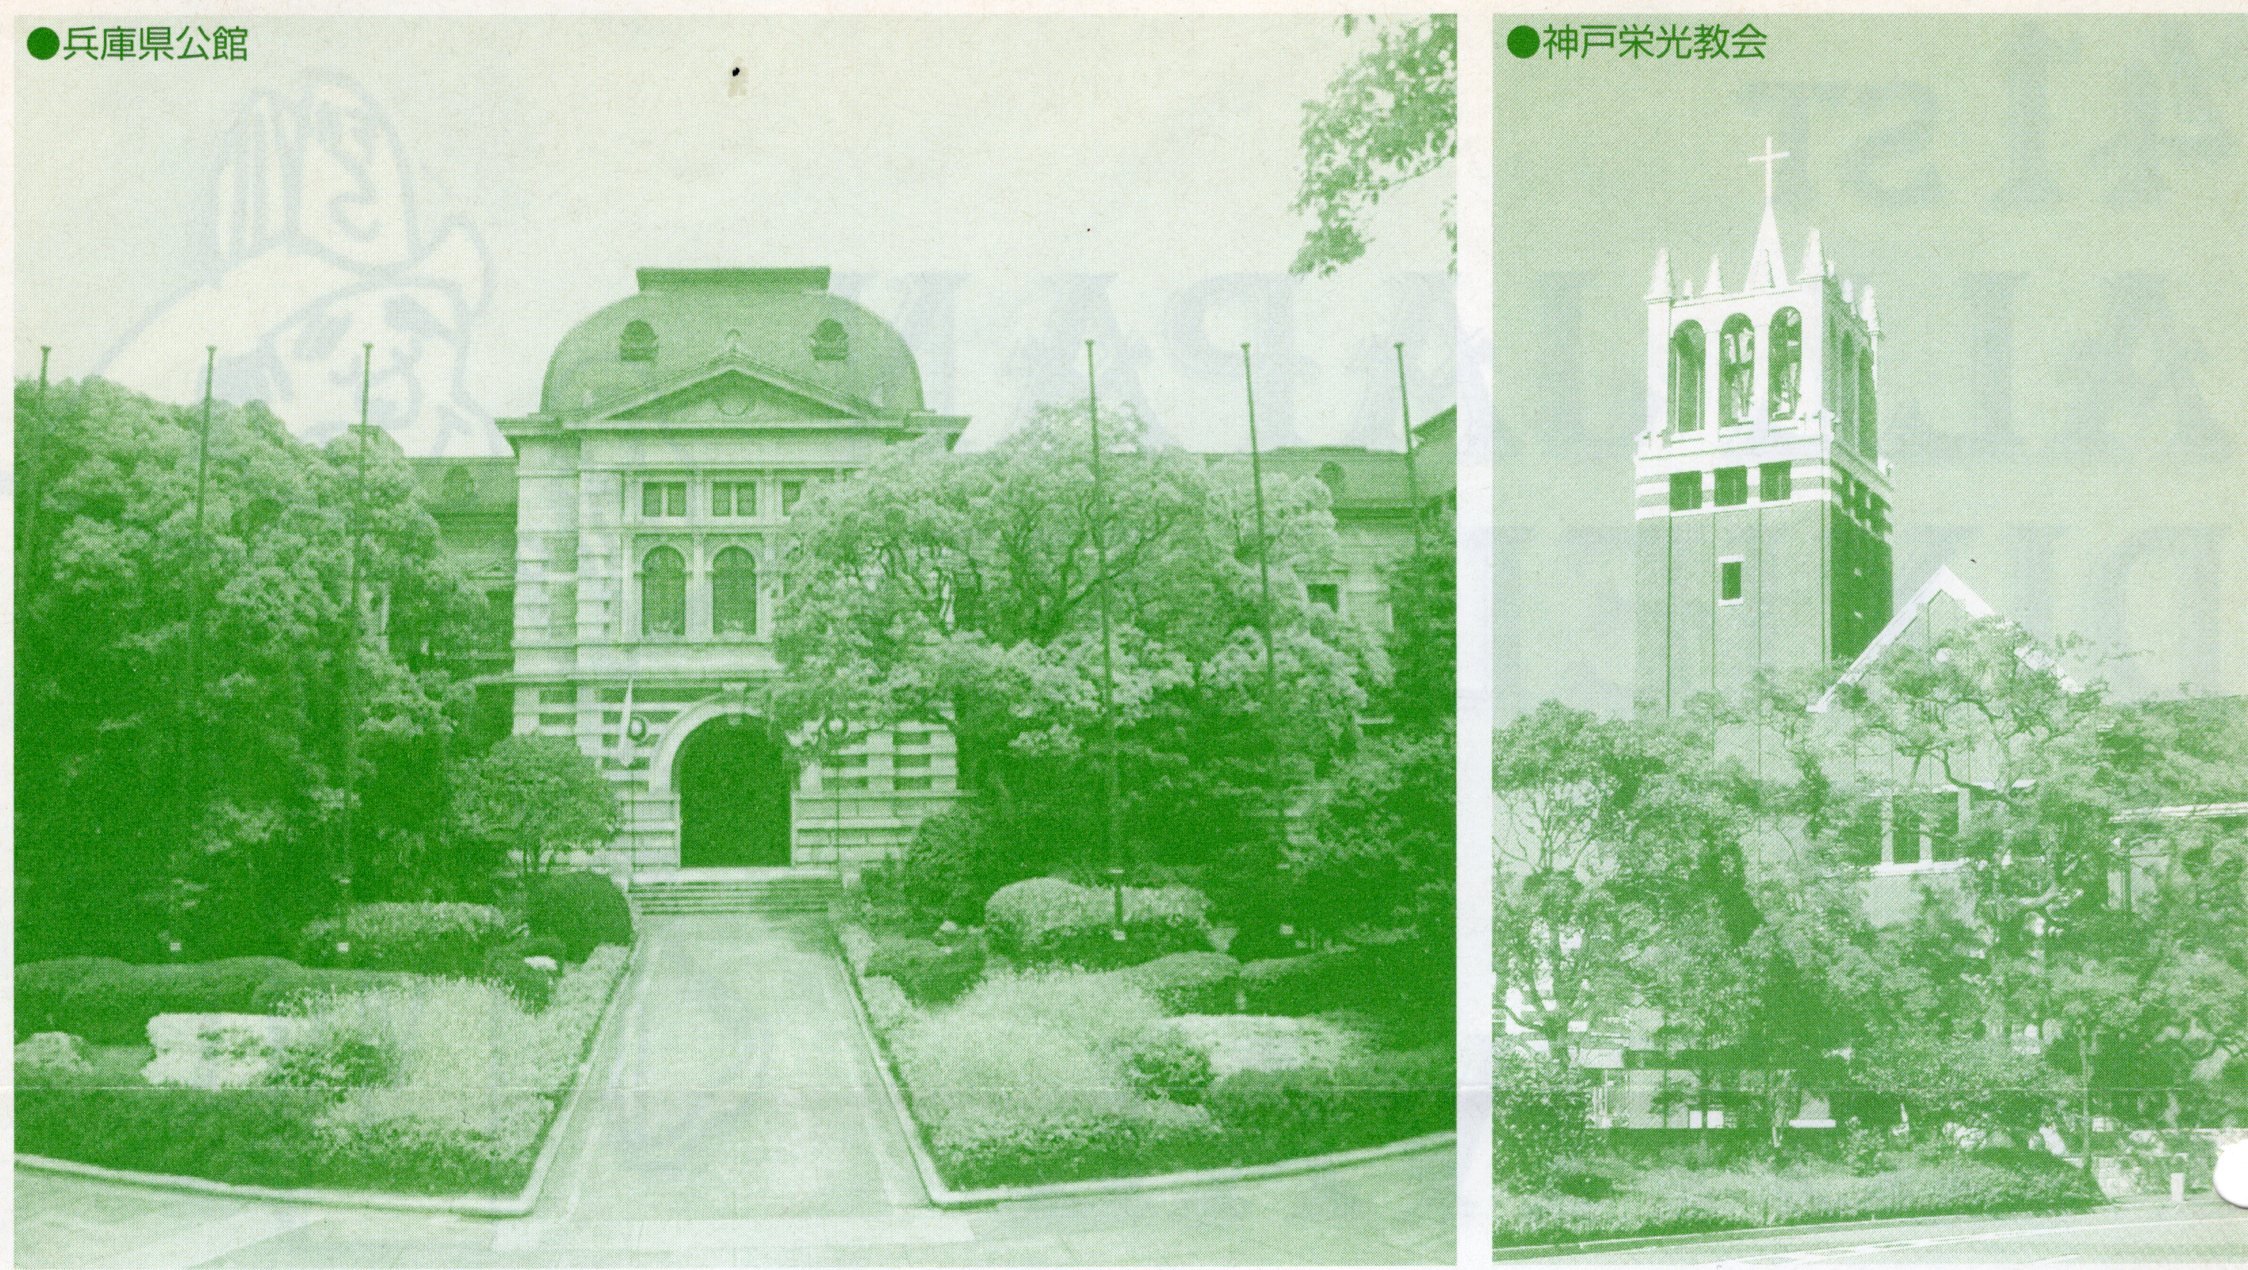 兵庫県公館と神戸栄光教会